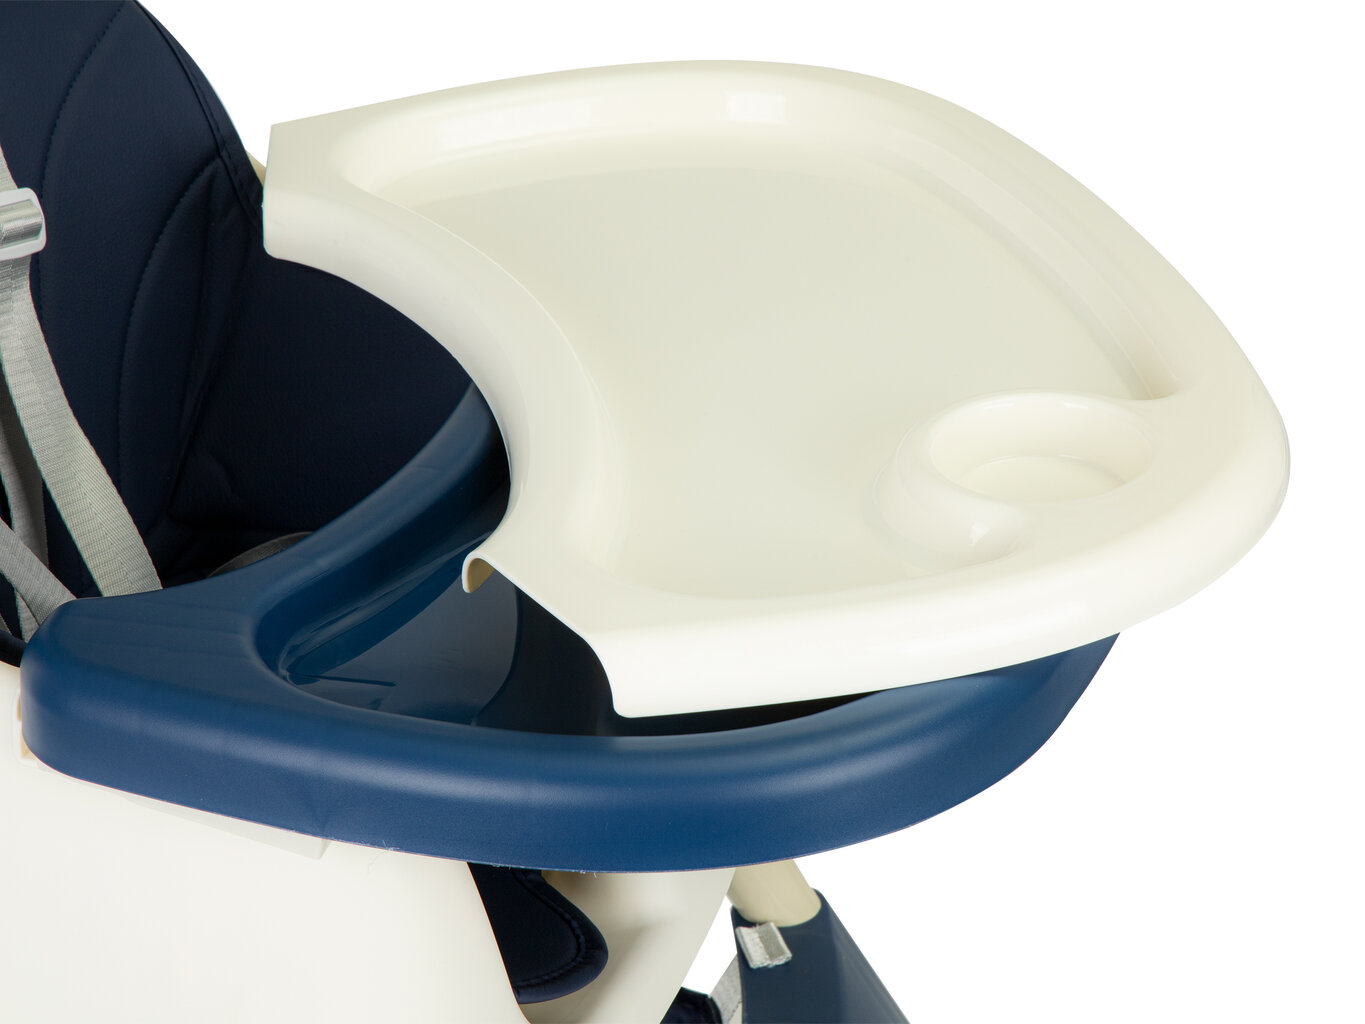 Maitinimo kėdutė 2in1 kaina ir informacija | Maitinimo kėdutės | pigu.lt